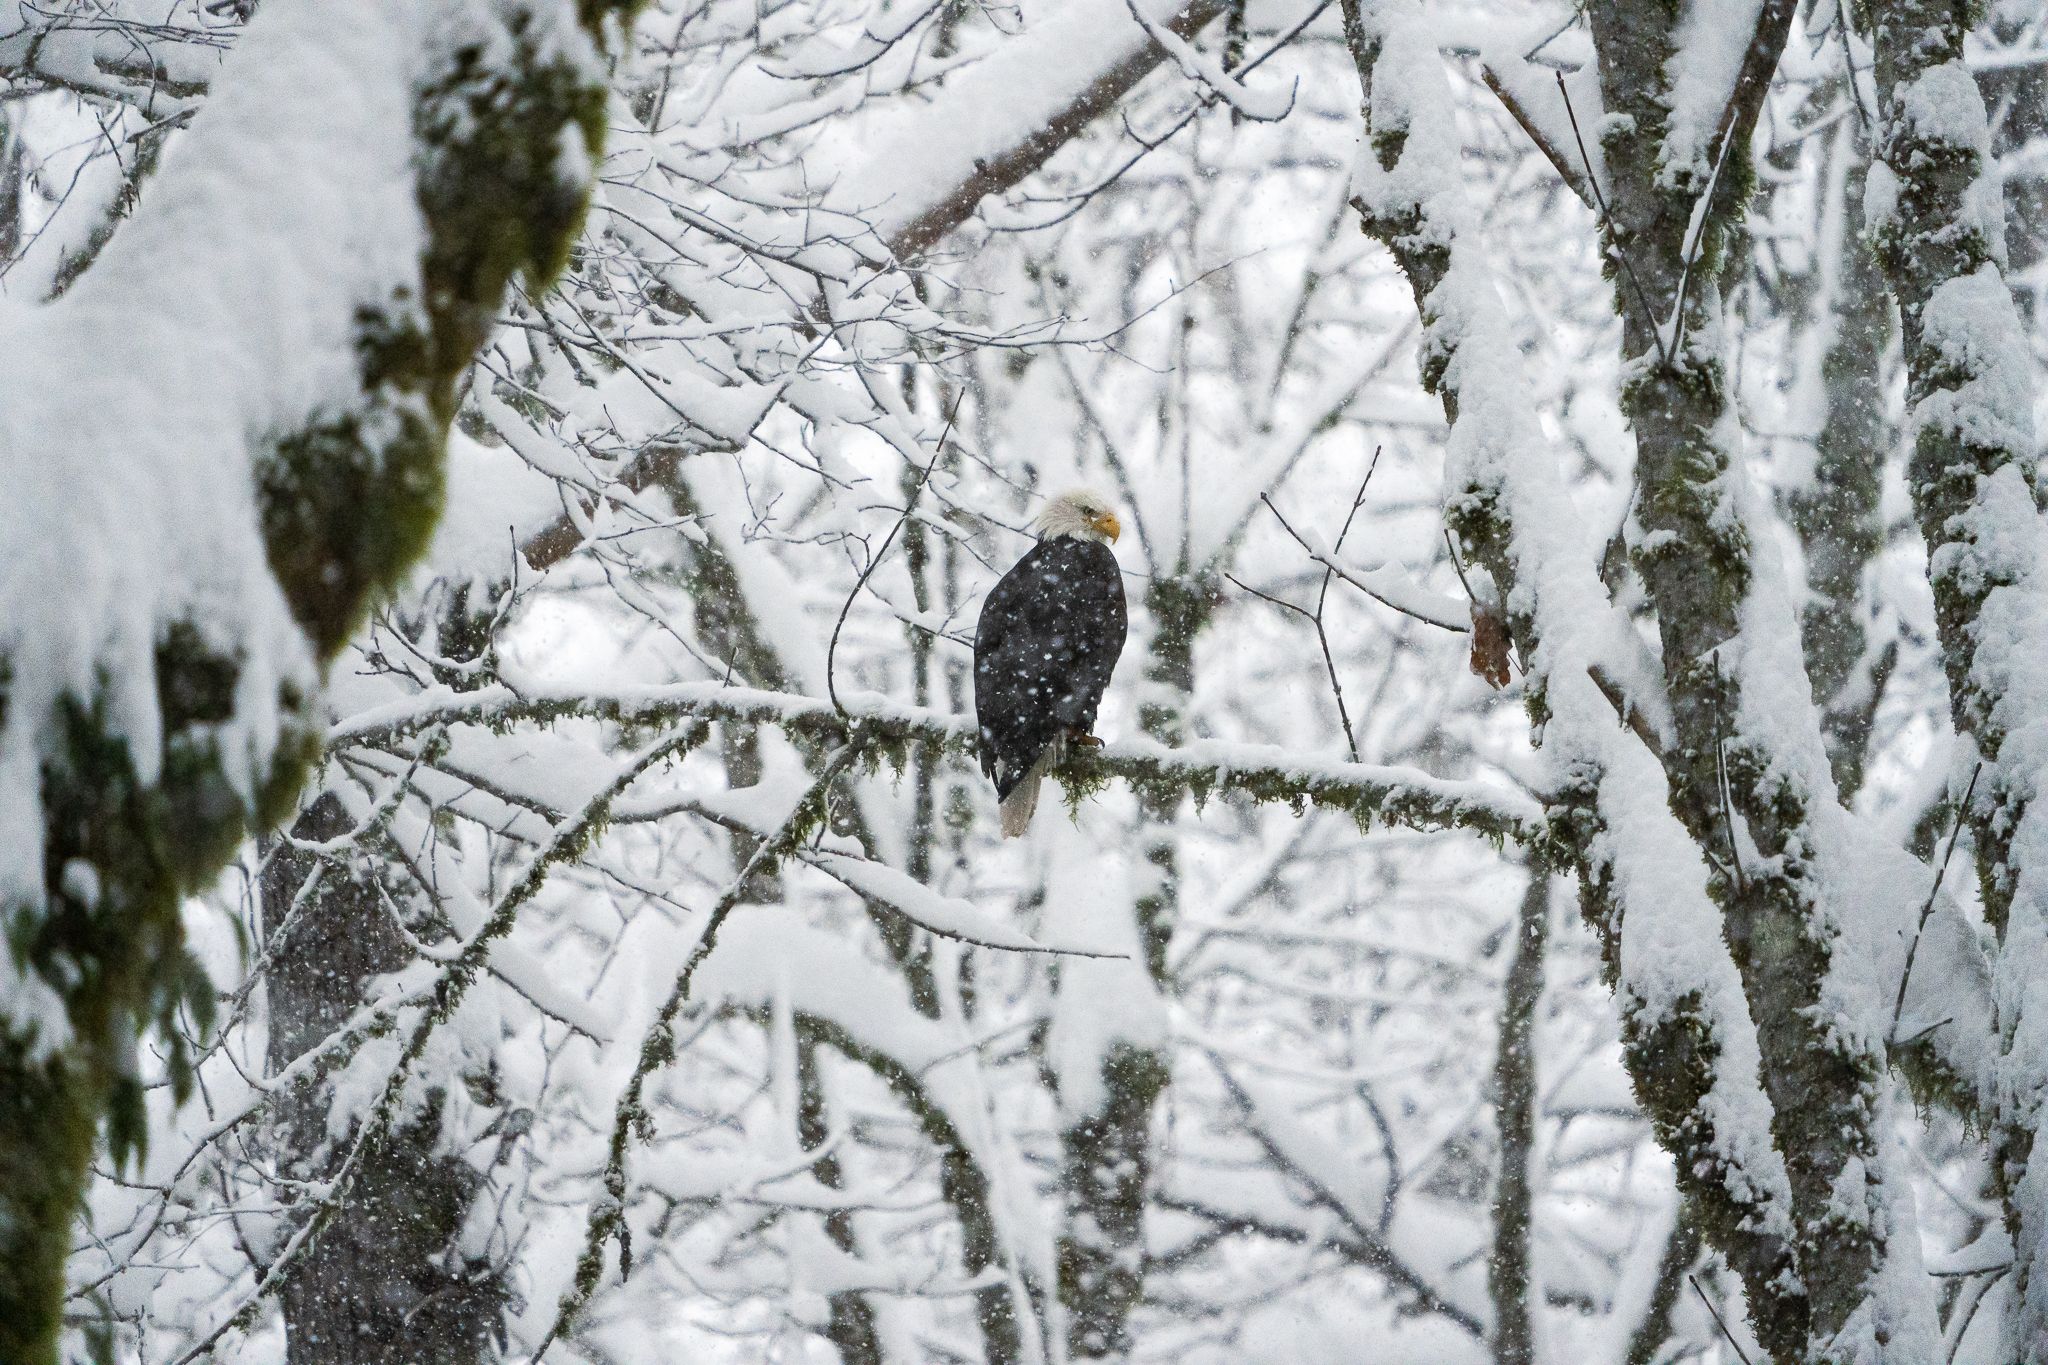 Winter Eagle